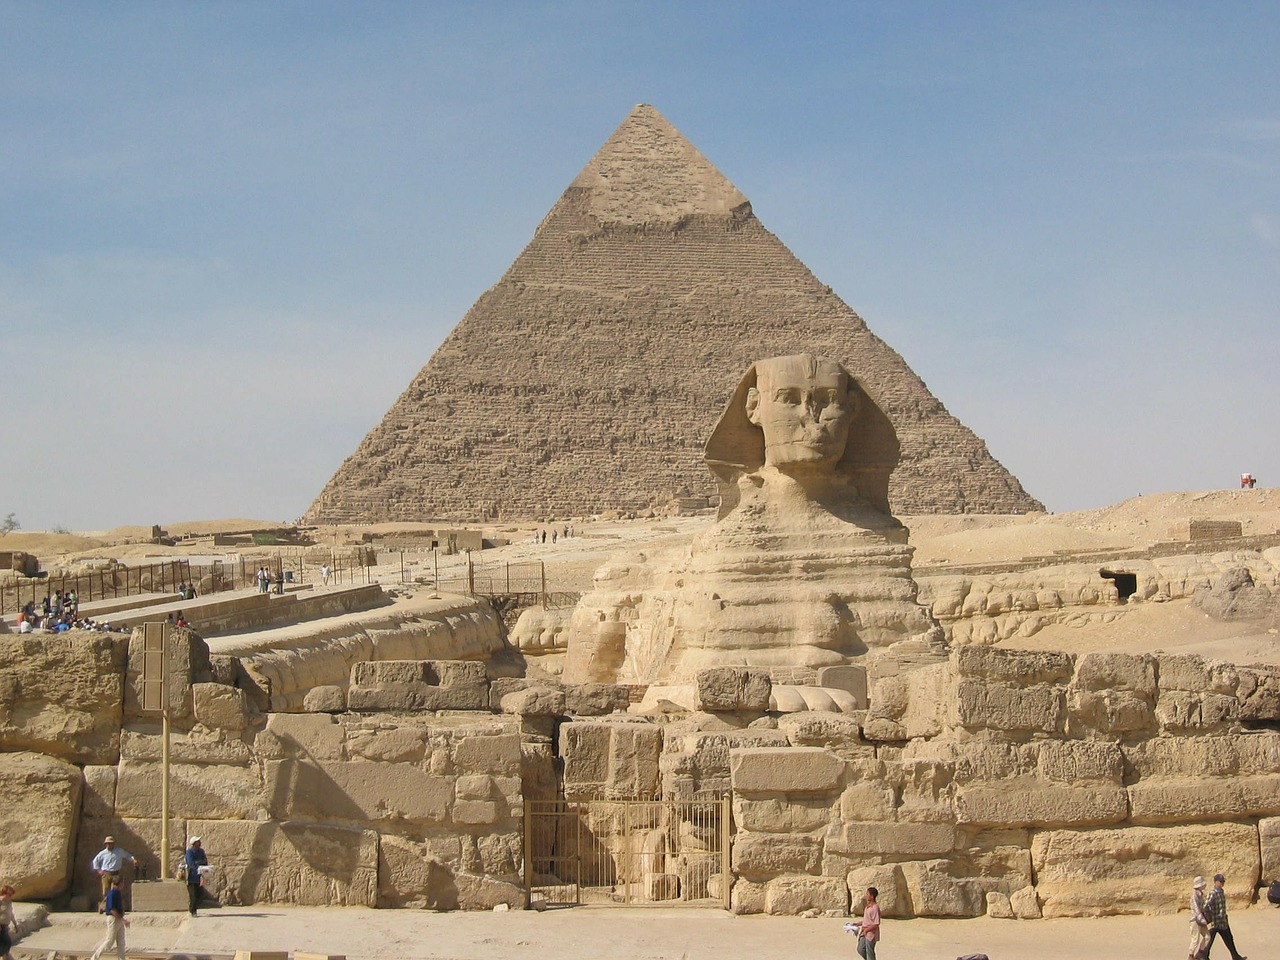 Cheopspyramiden, en byggnad som väckt stor uppmärksamhet